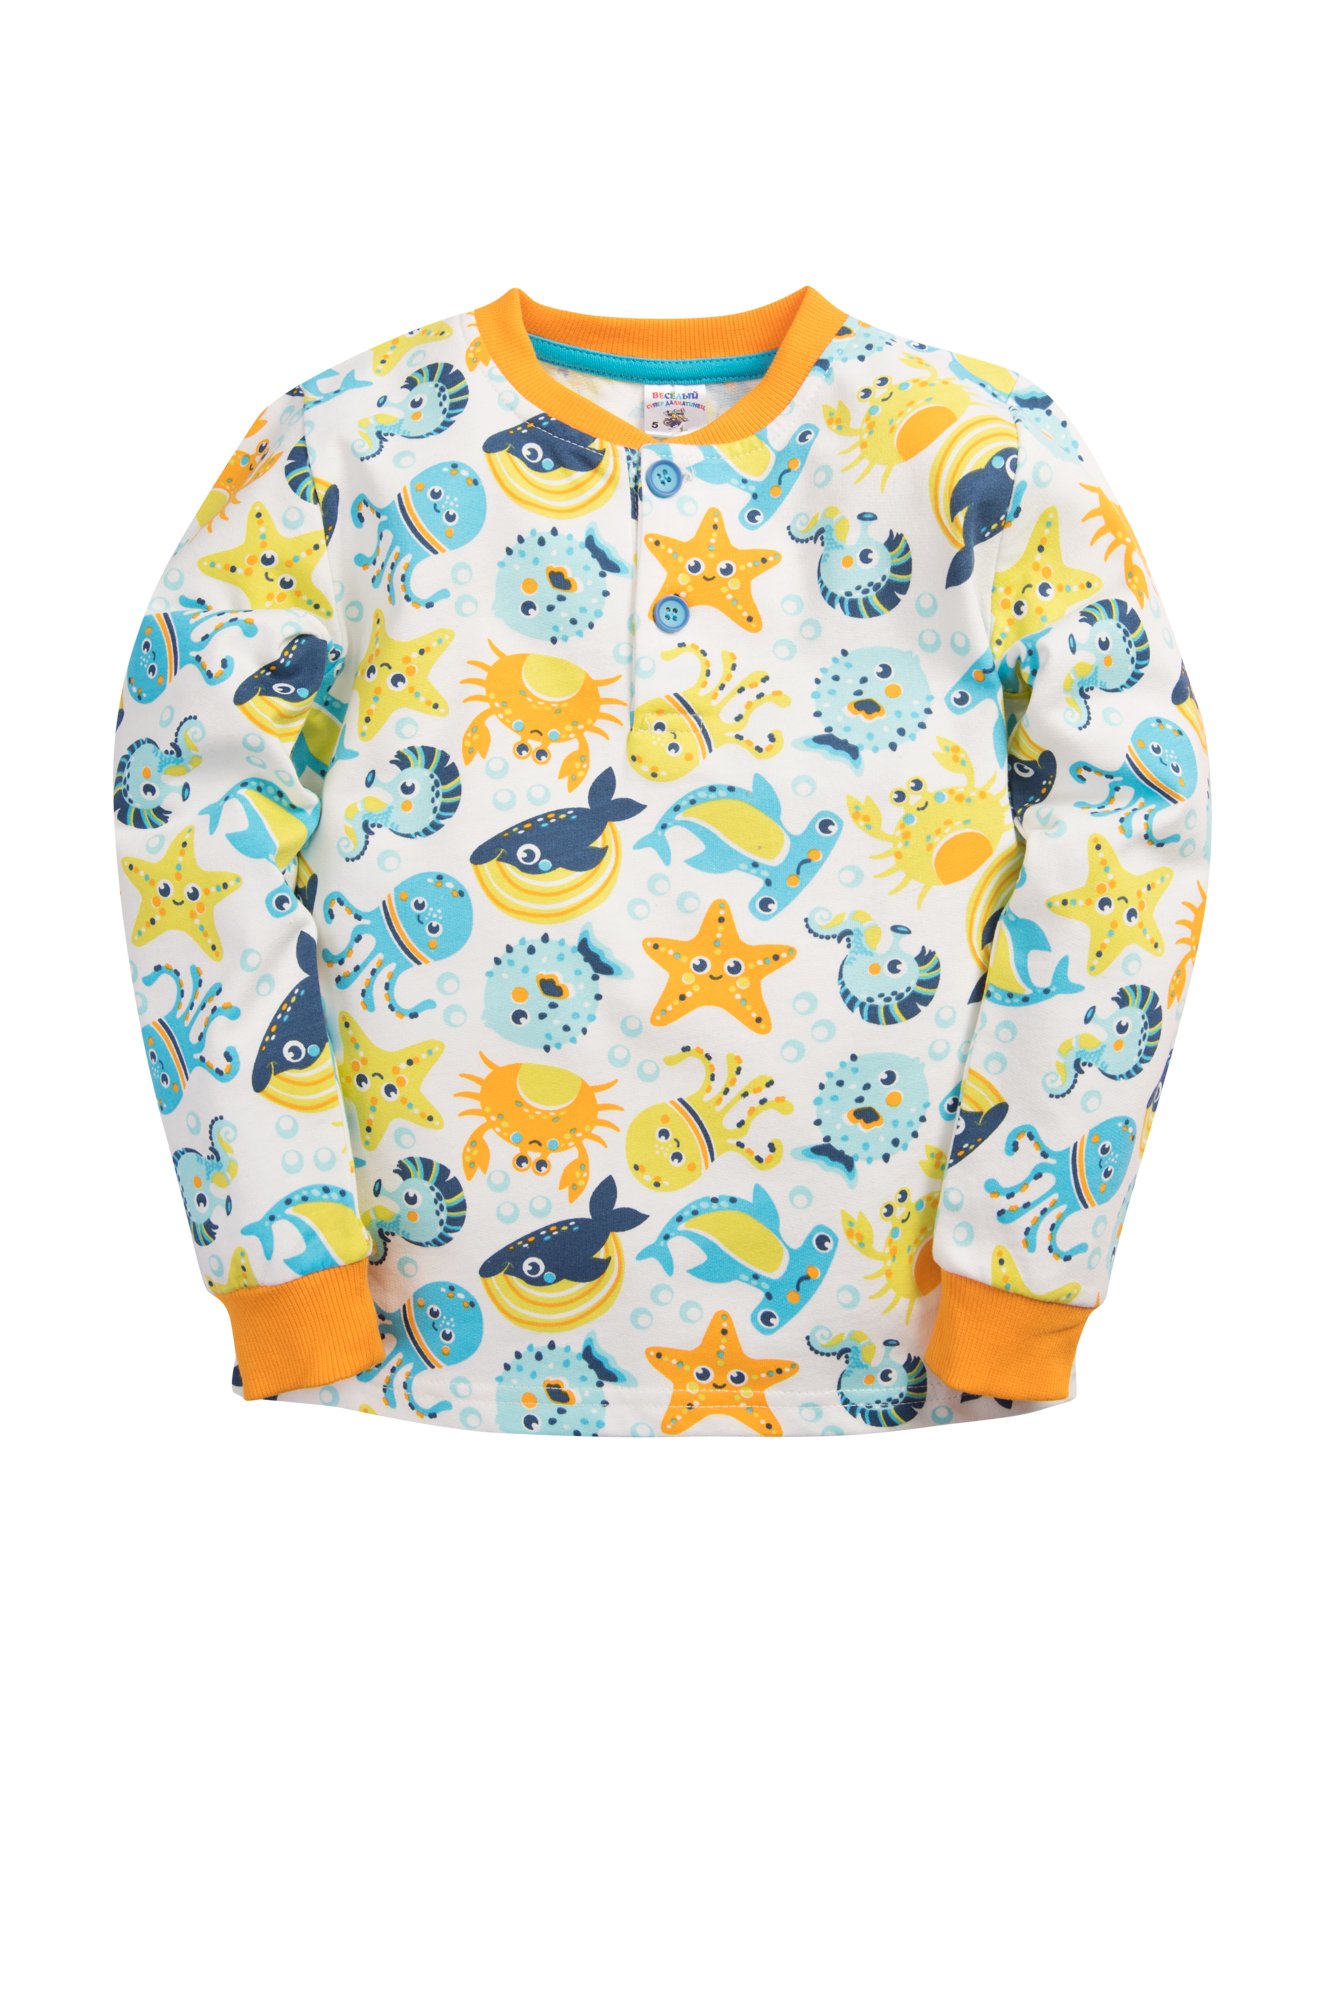 Пижама для мальчика Веселый Супер Далматинец